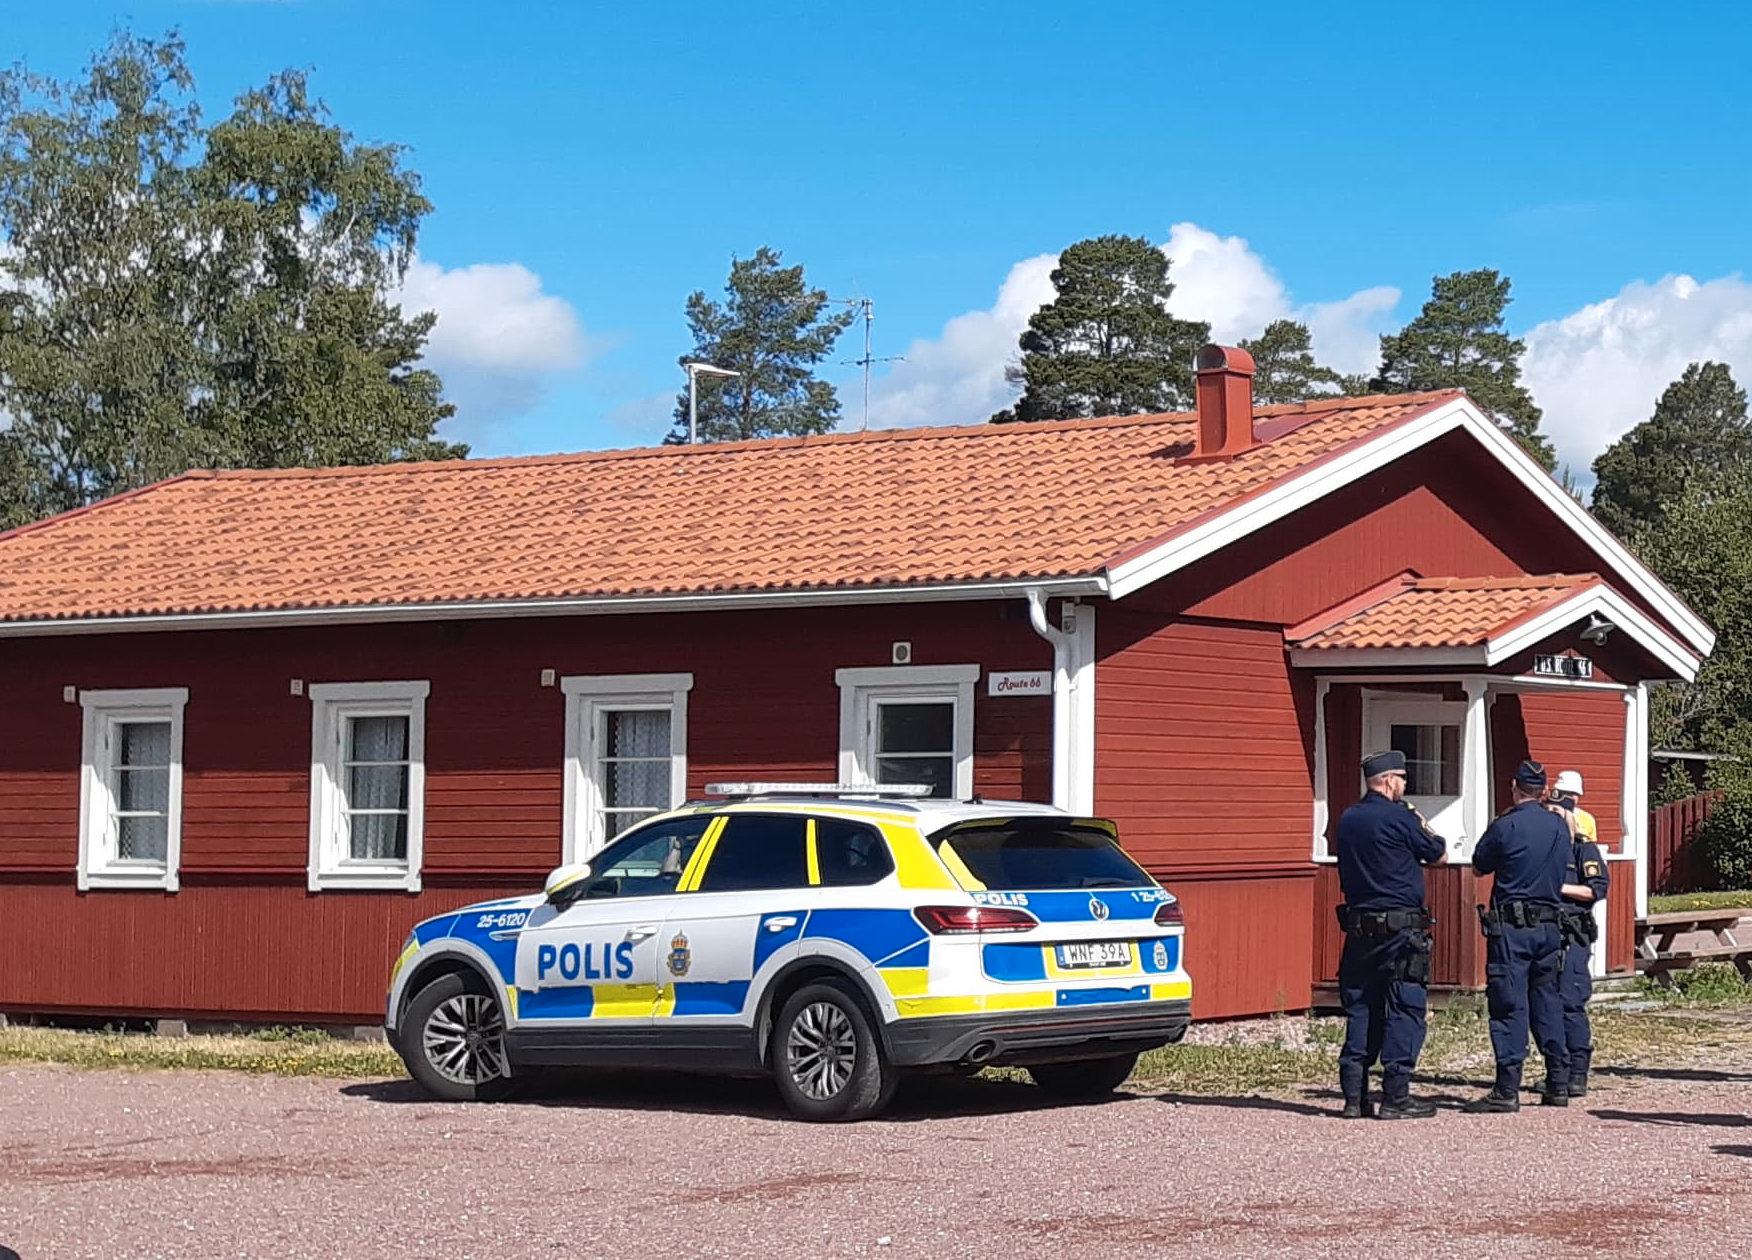 Anmälan kom in under torsdagen, säger Lars Hedelin, presstalesperson på polisregion Bergslagen.